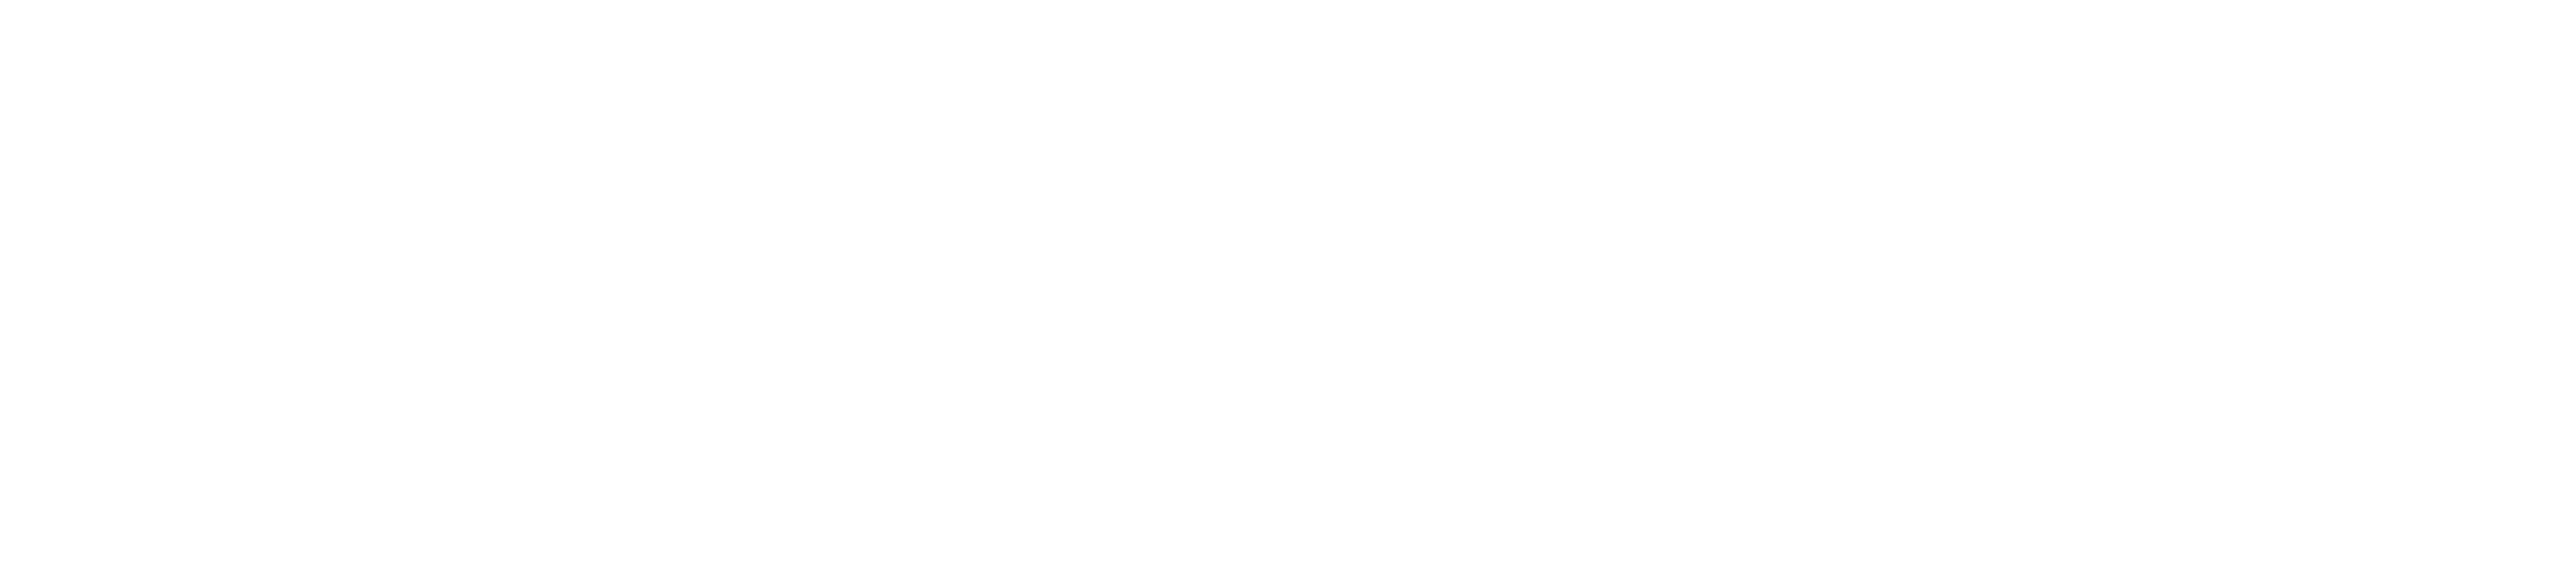 Vimian logo